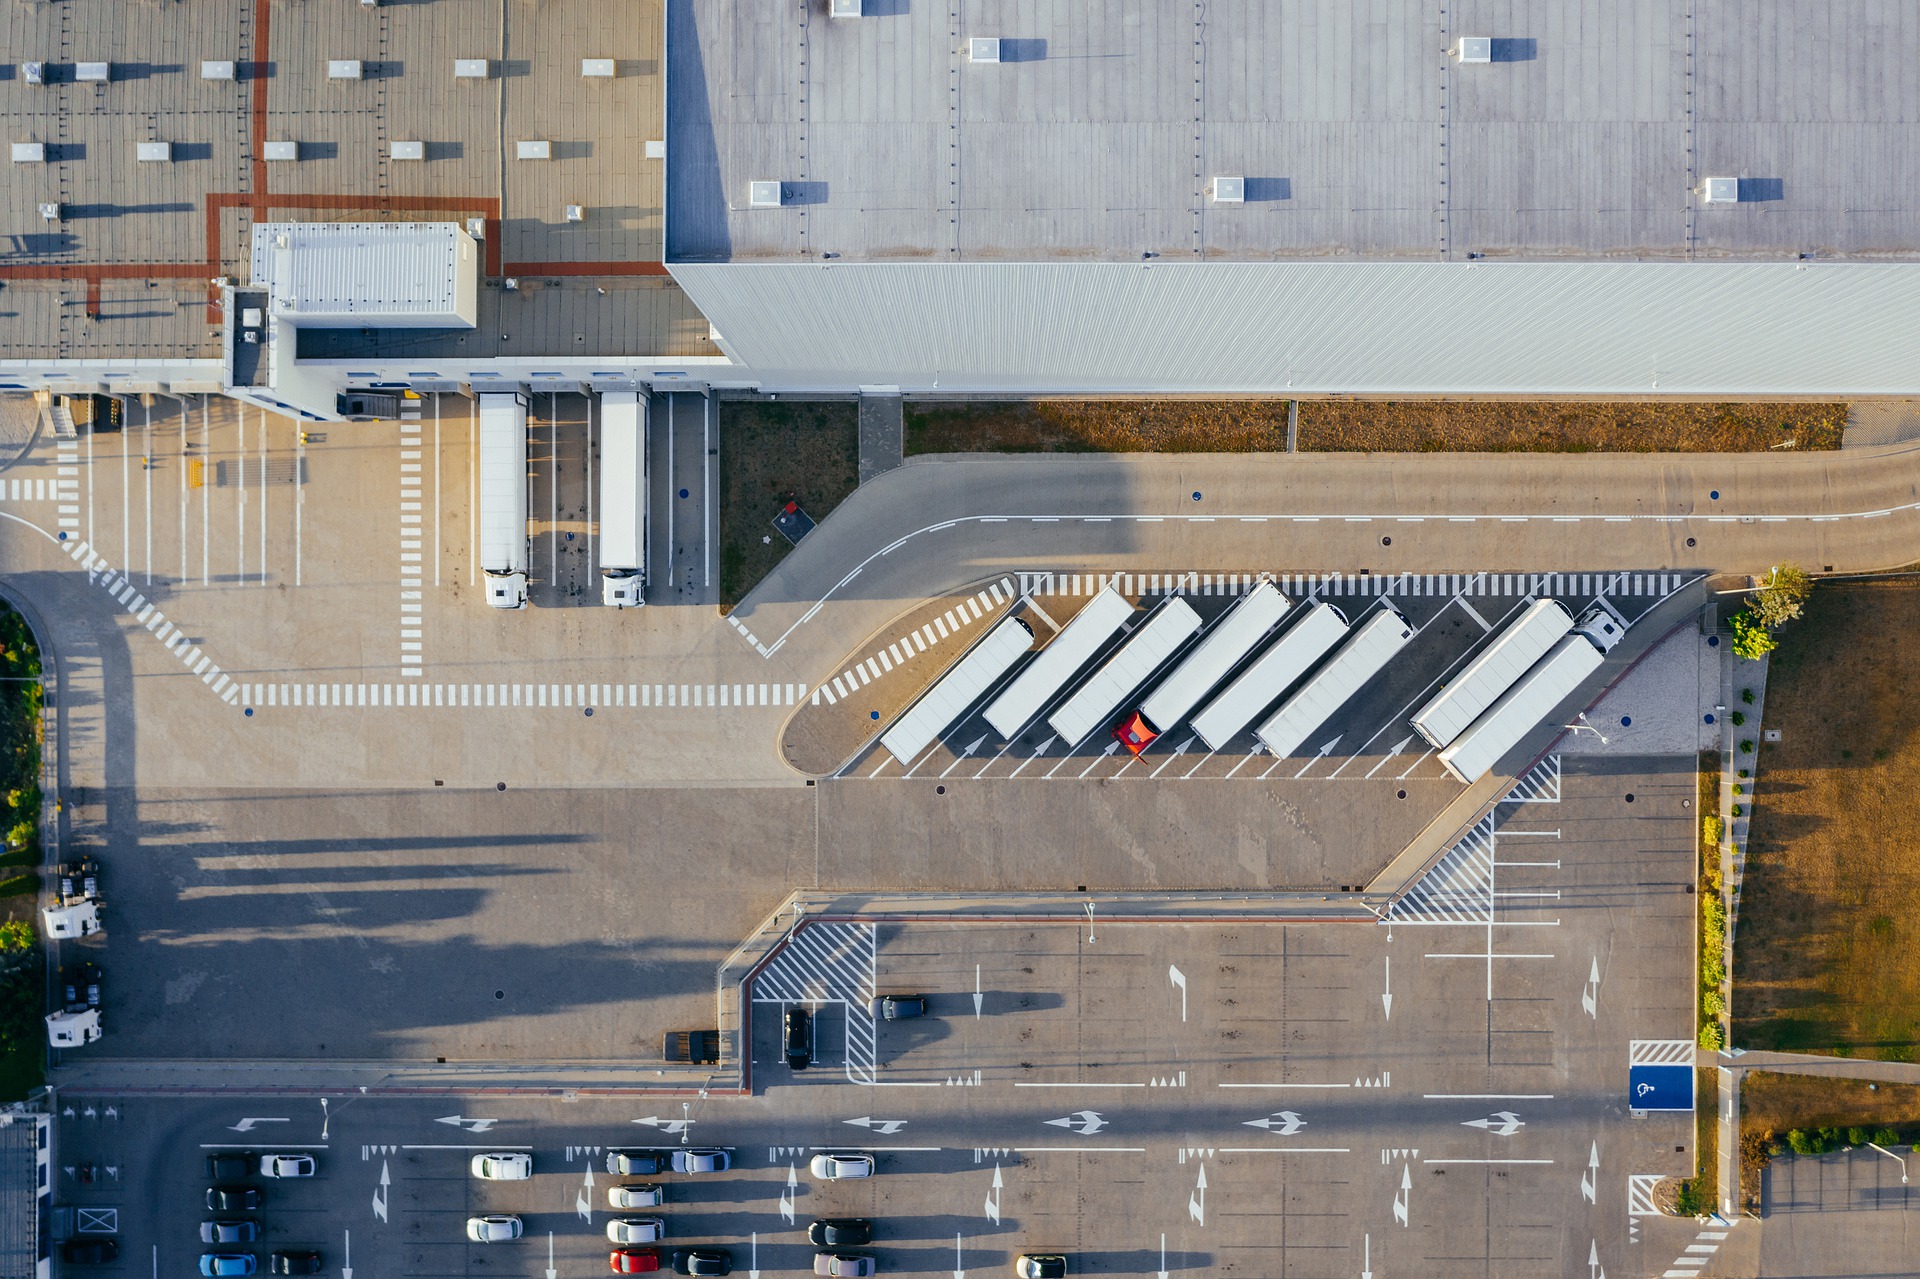 Bayer diversifica mix energético para descarbonizar logística e manufatura. Na imagem: Foto aérea de caminhões estacionados em planta industrial (Foto: Marcin Jozwiak/Pixabay)